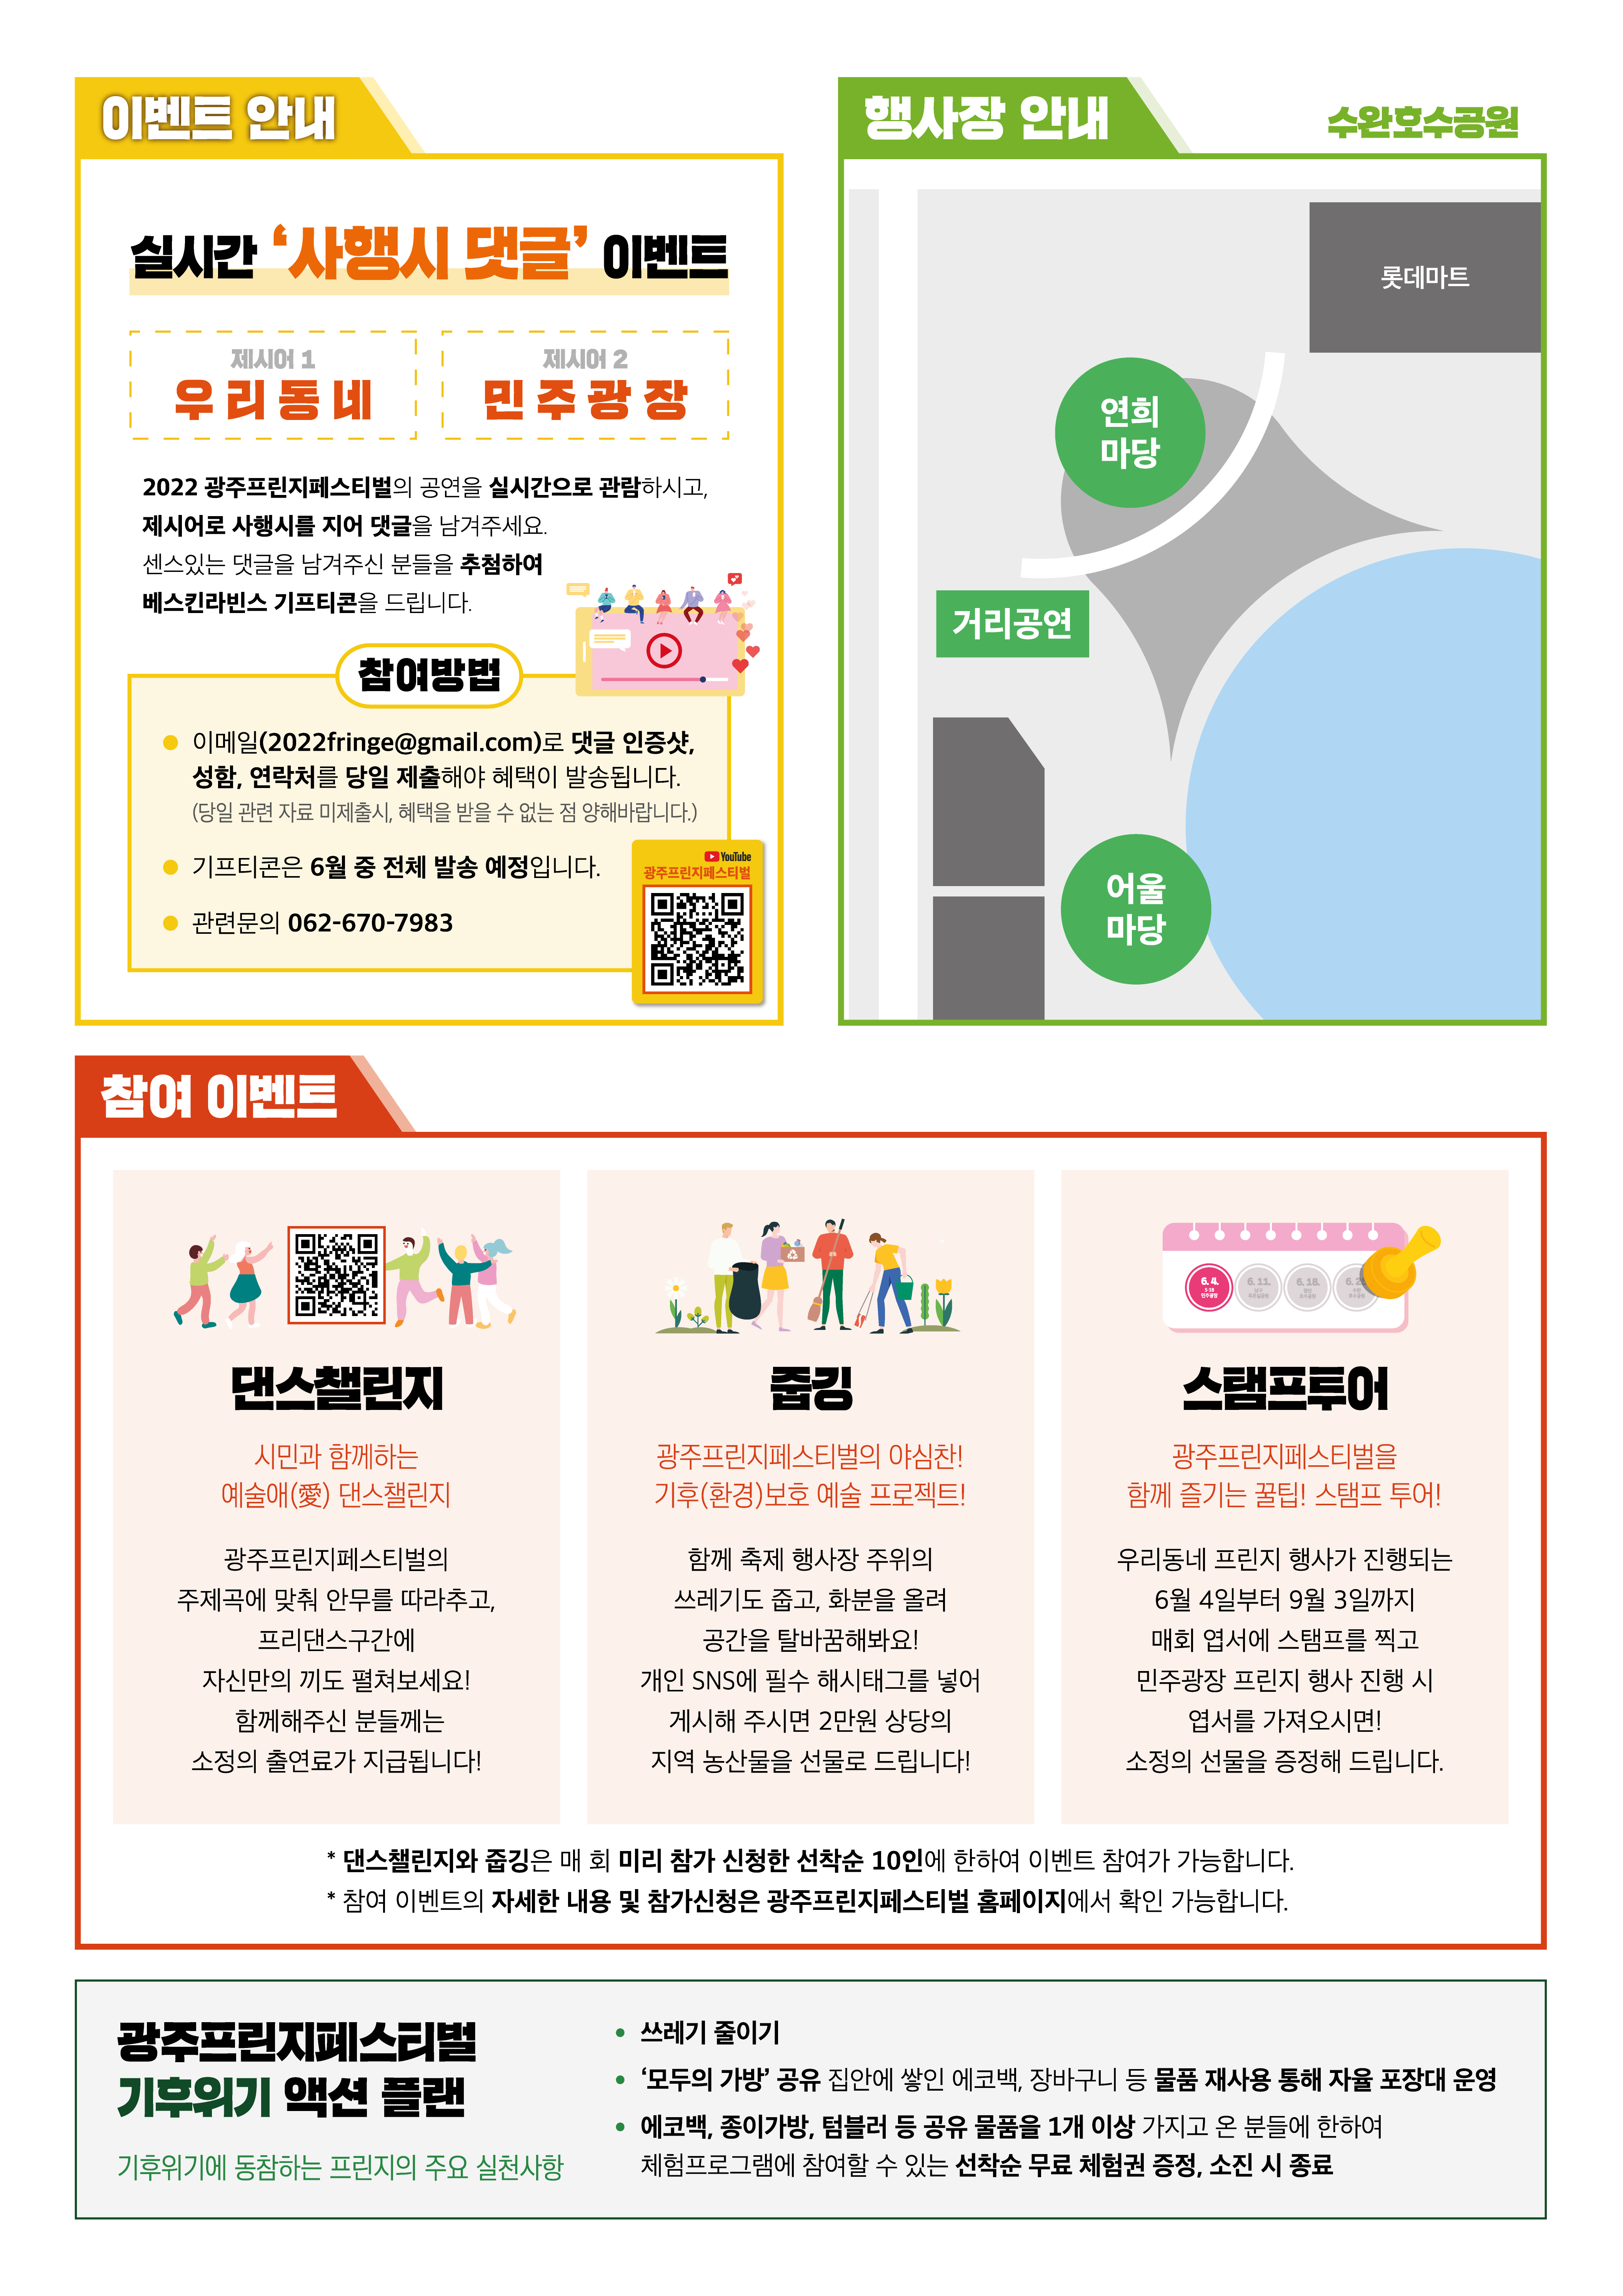 2022프린지_리플렛_4회차_홍보용(4).jpg